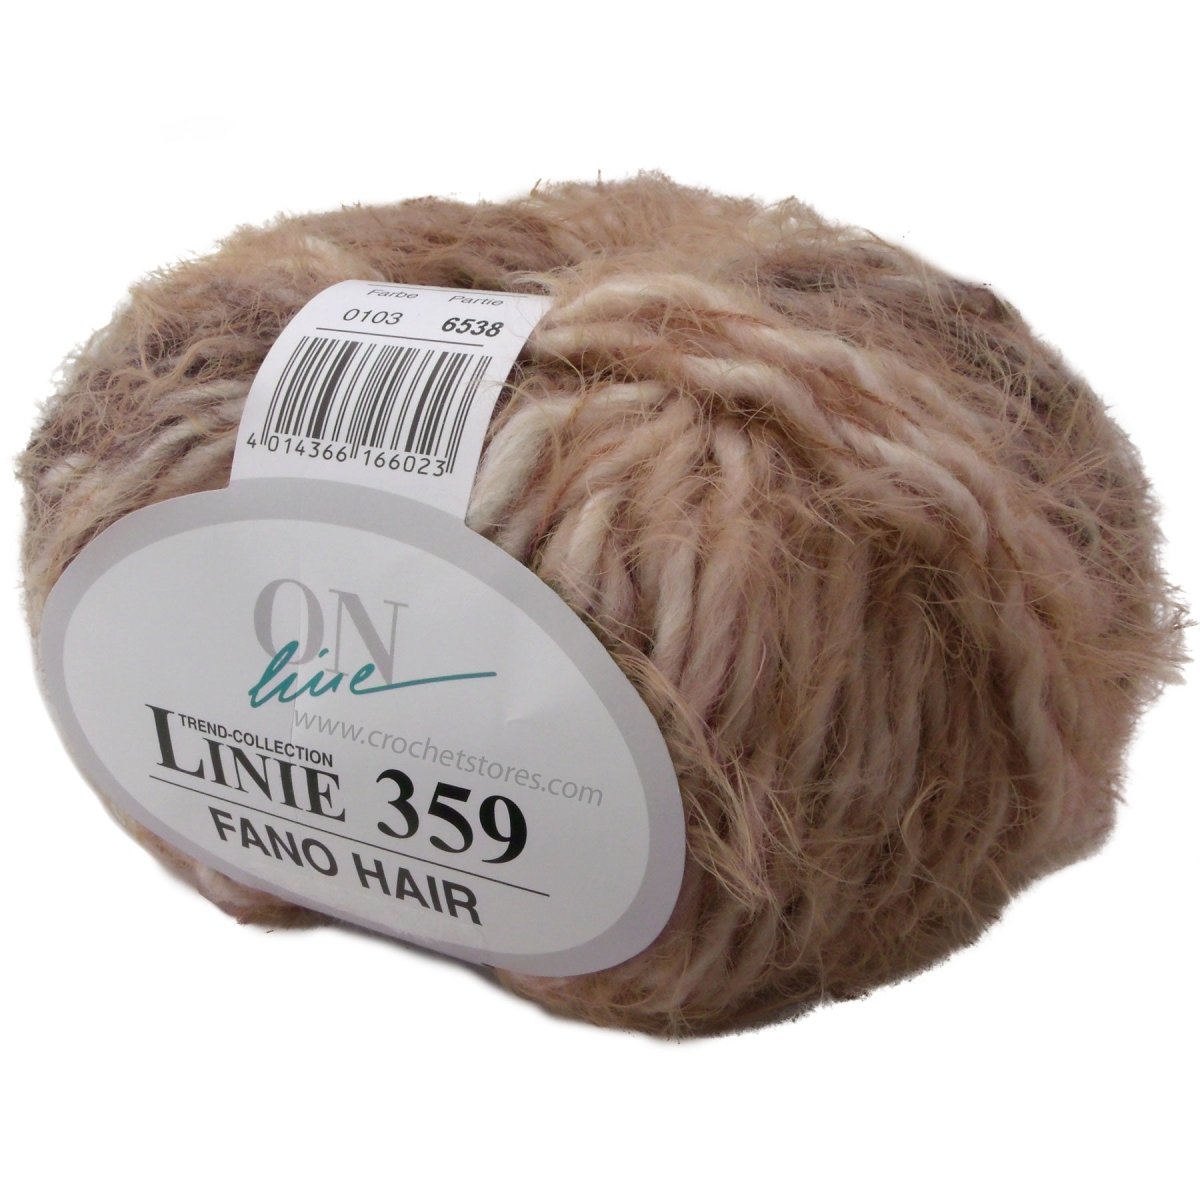 FANO HAIR - Crochetstores110359-1014014366166009